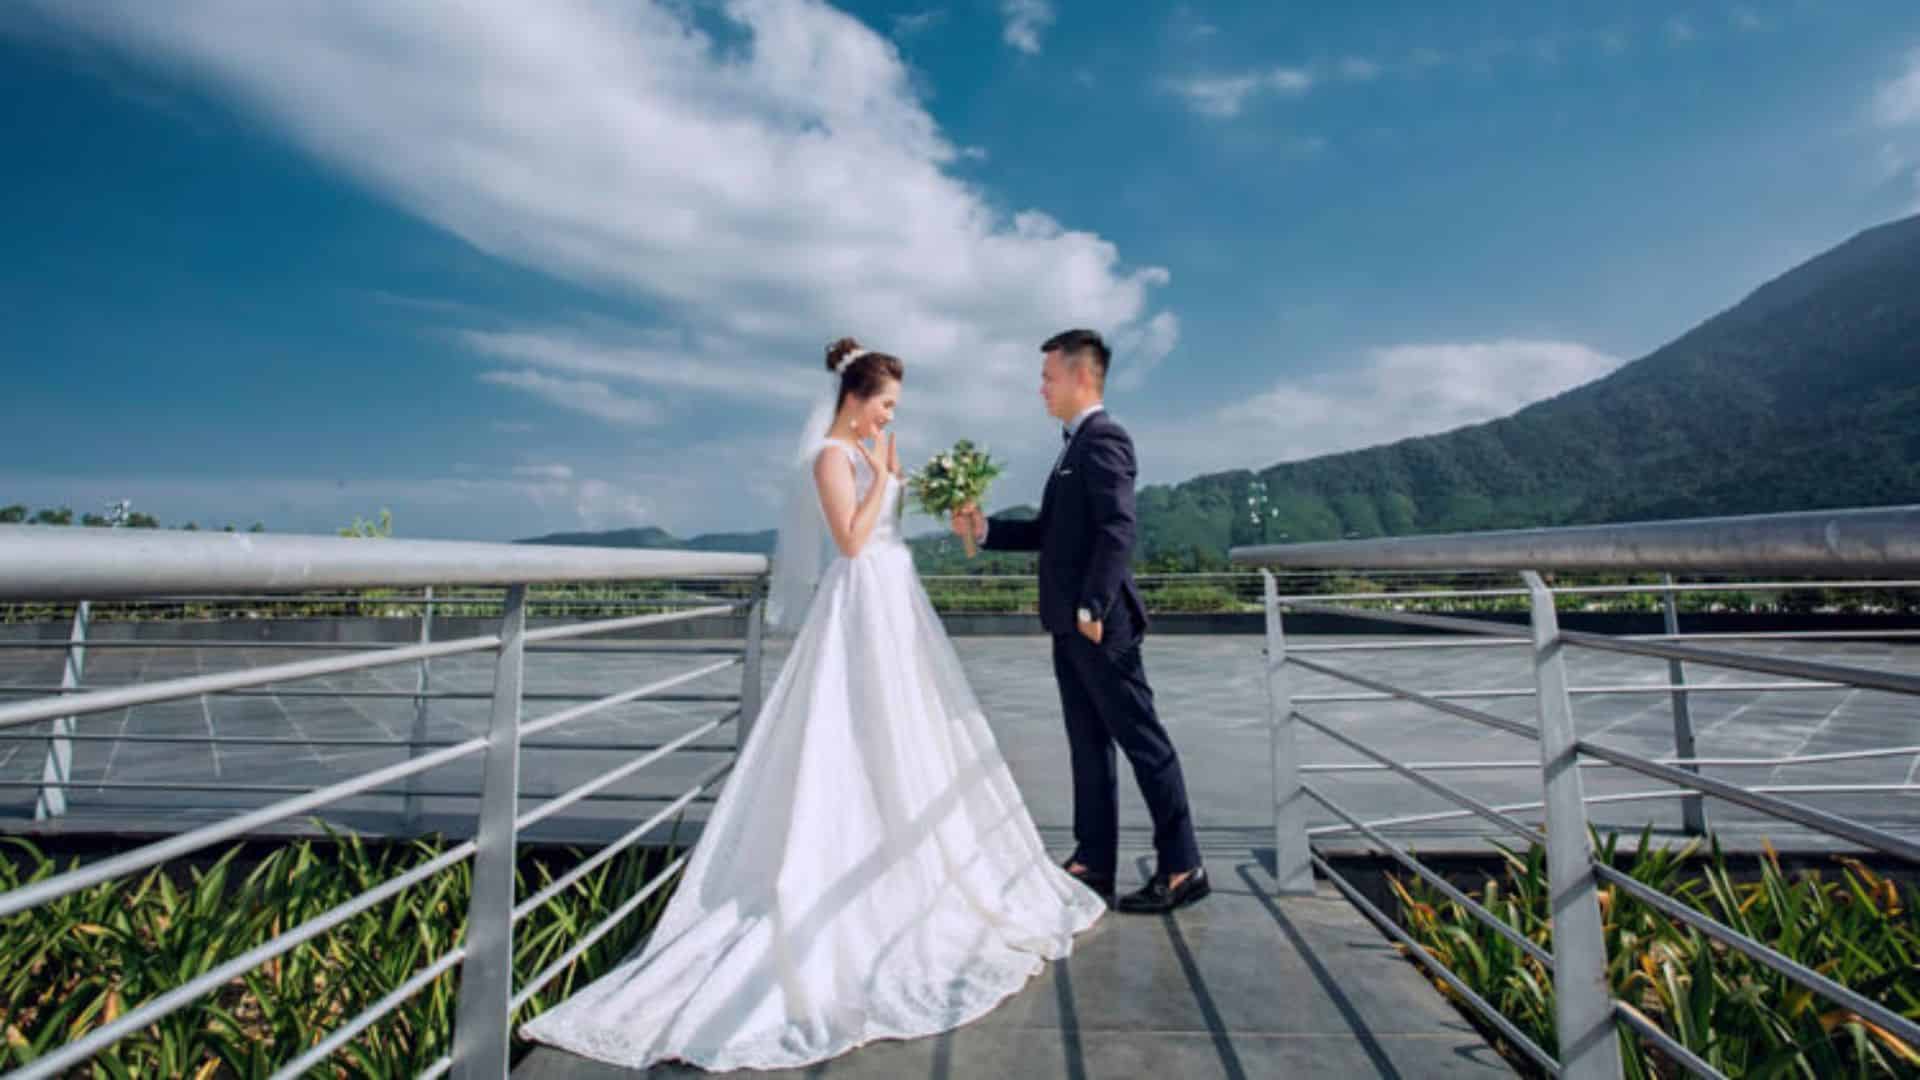 LeVinh Studio Wedding - Đơn vị chụp ảnh cưới đẹp Đà Nẵng chuyên nghiệp 